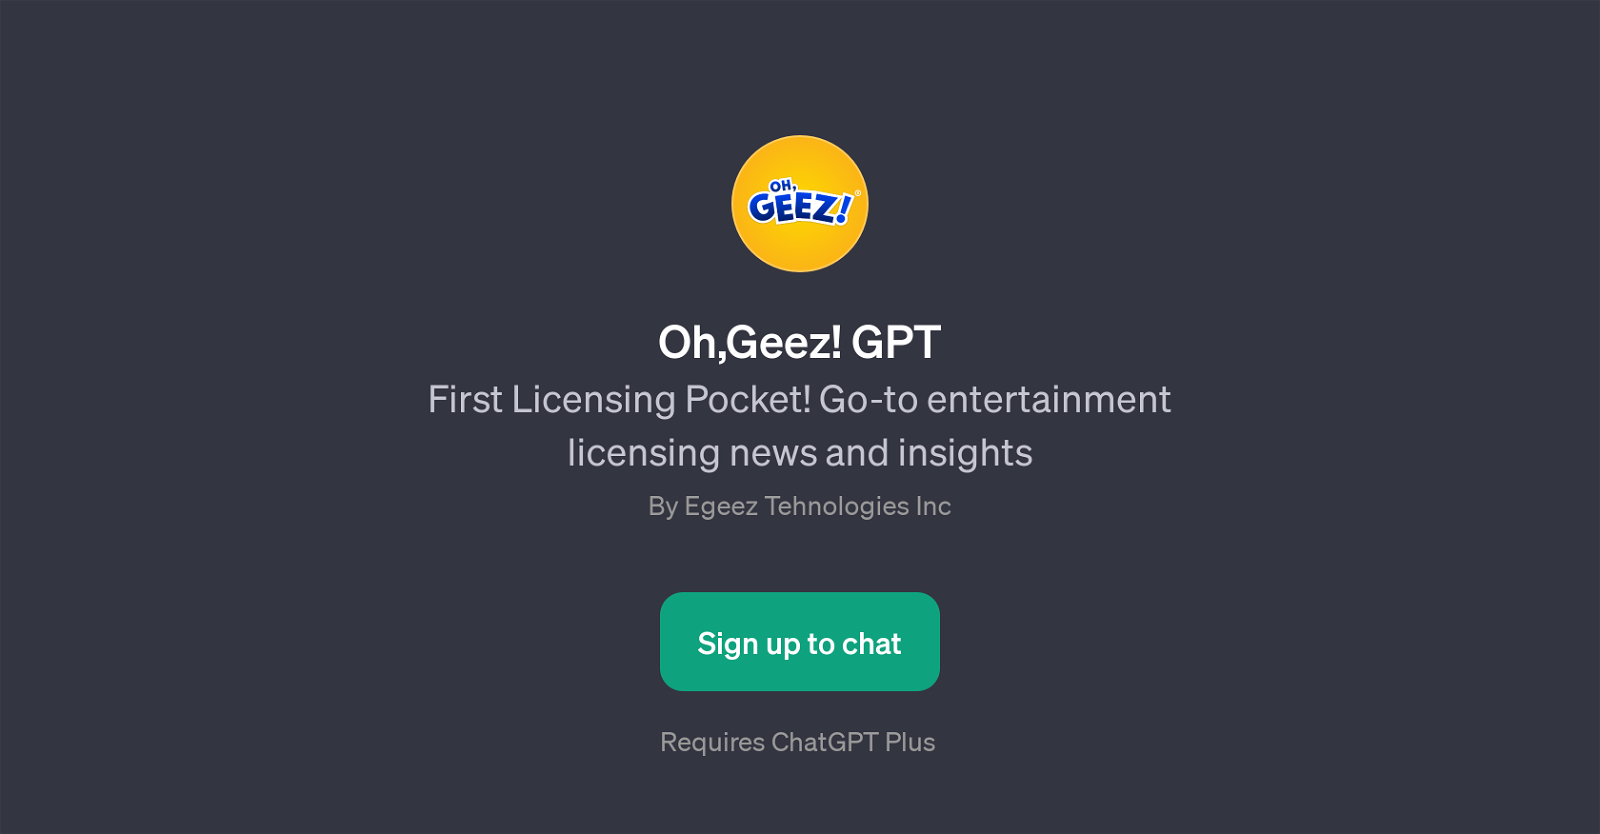 Oh, Geez! GPT website